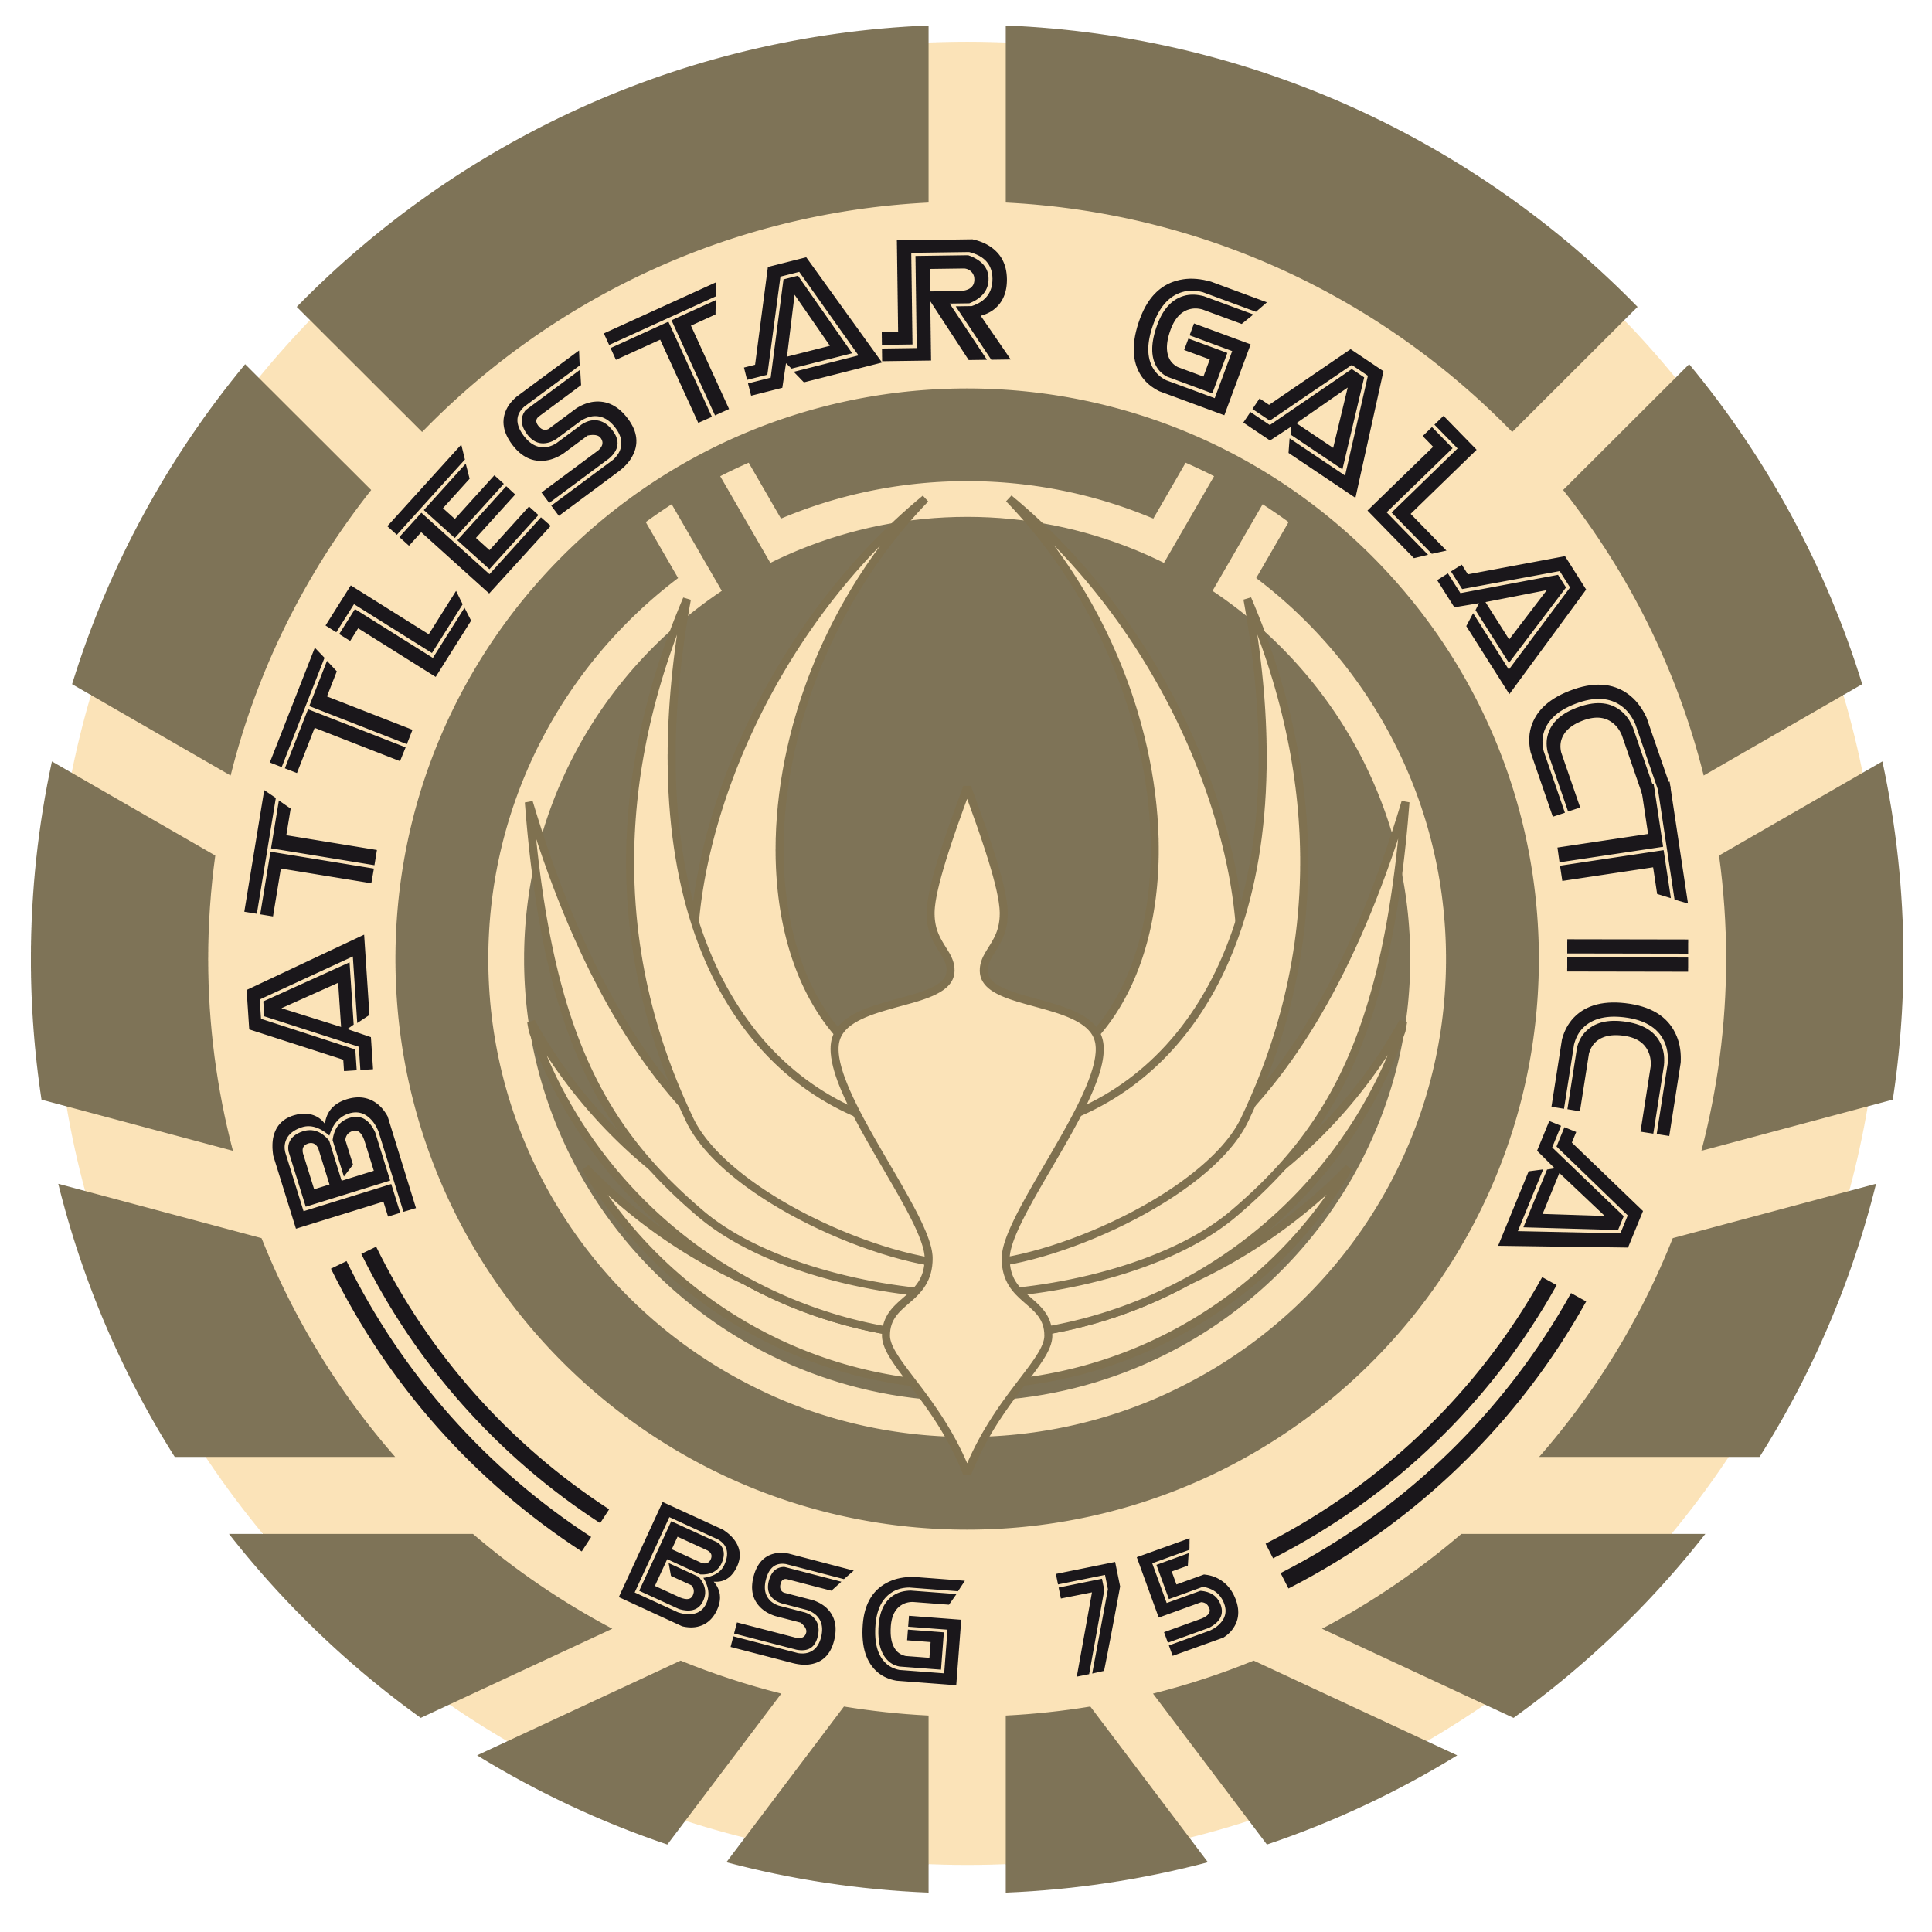 Vinilos Decorativos: Battlestar Galactica